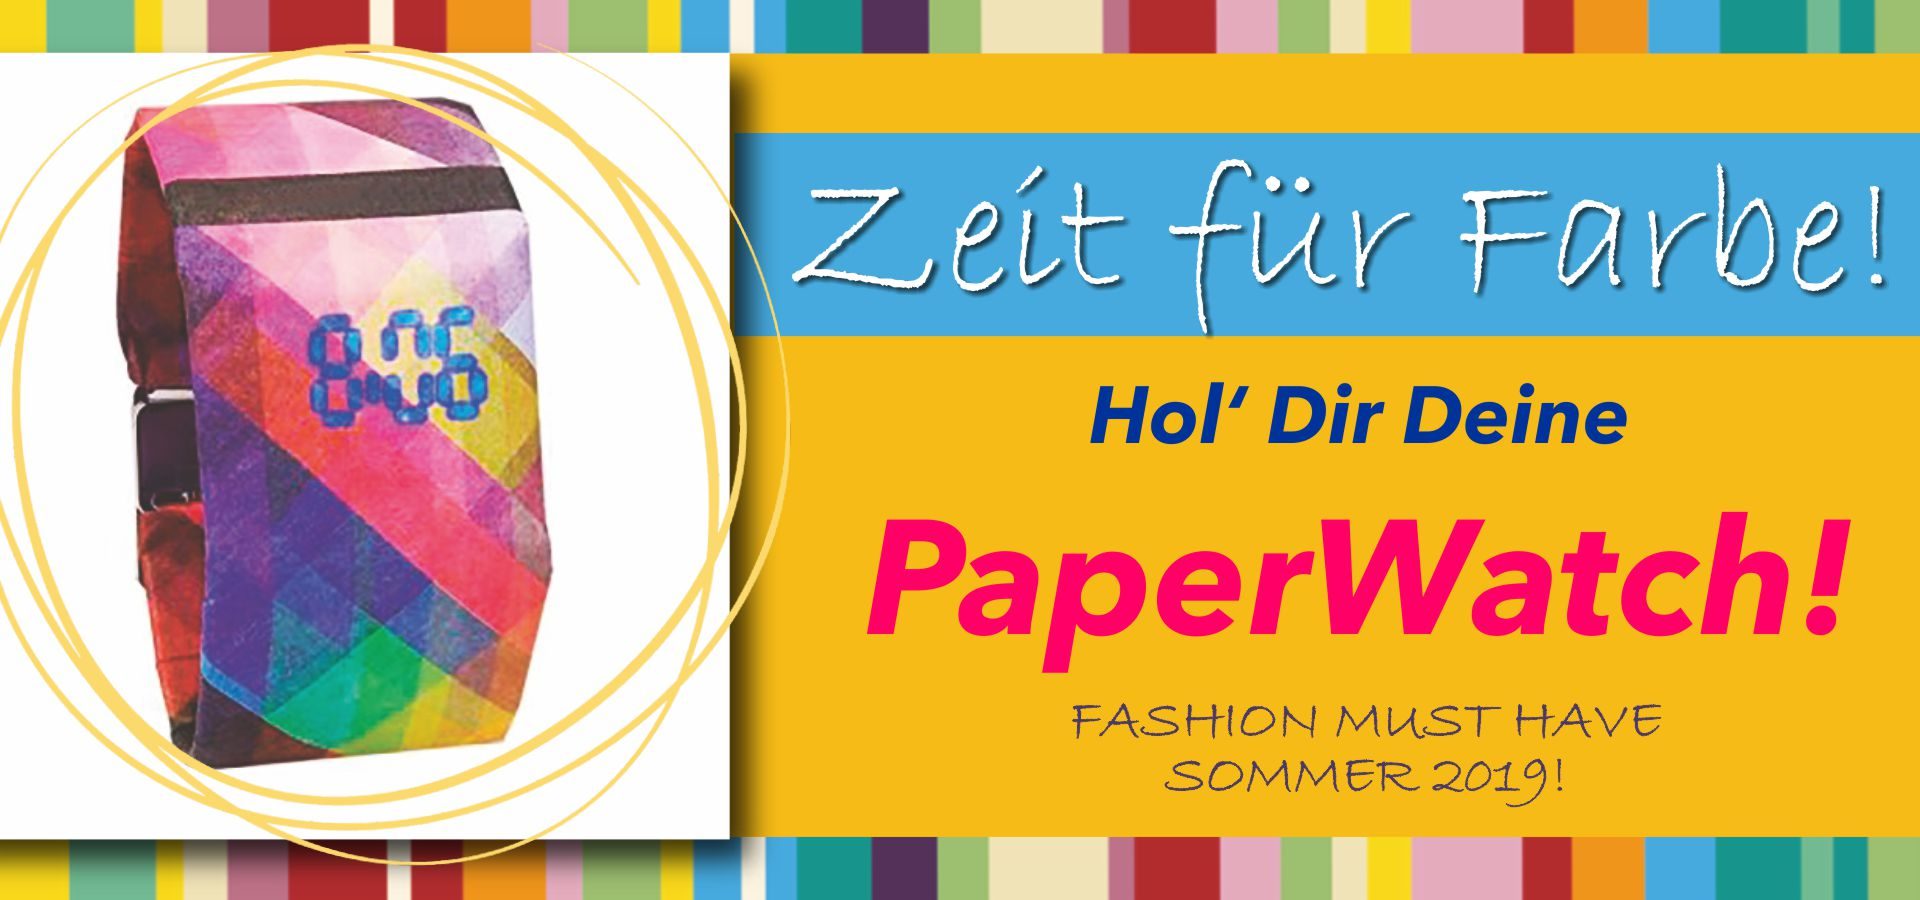 paperwatch_zeit_fuer_farbe